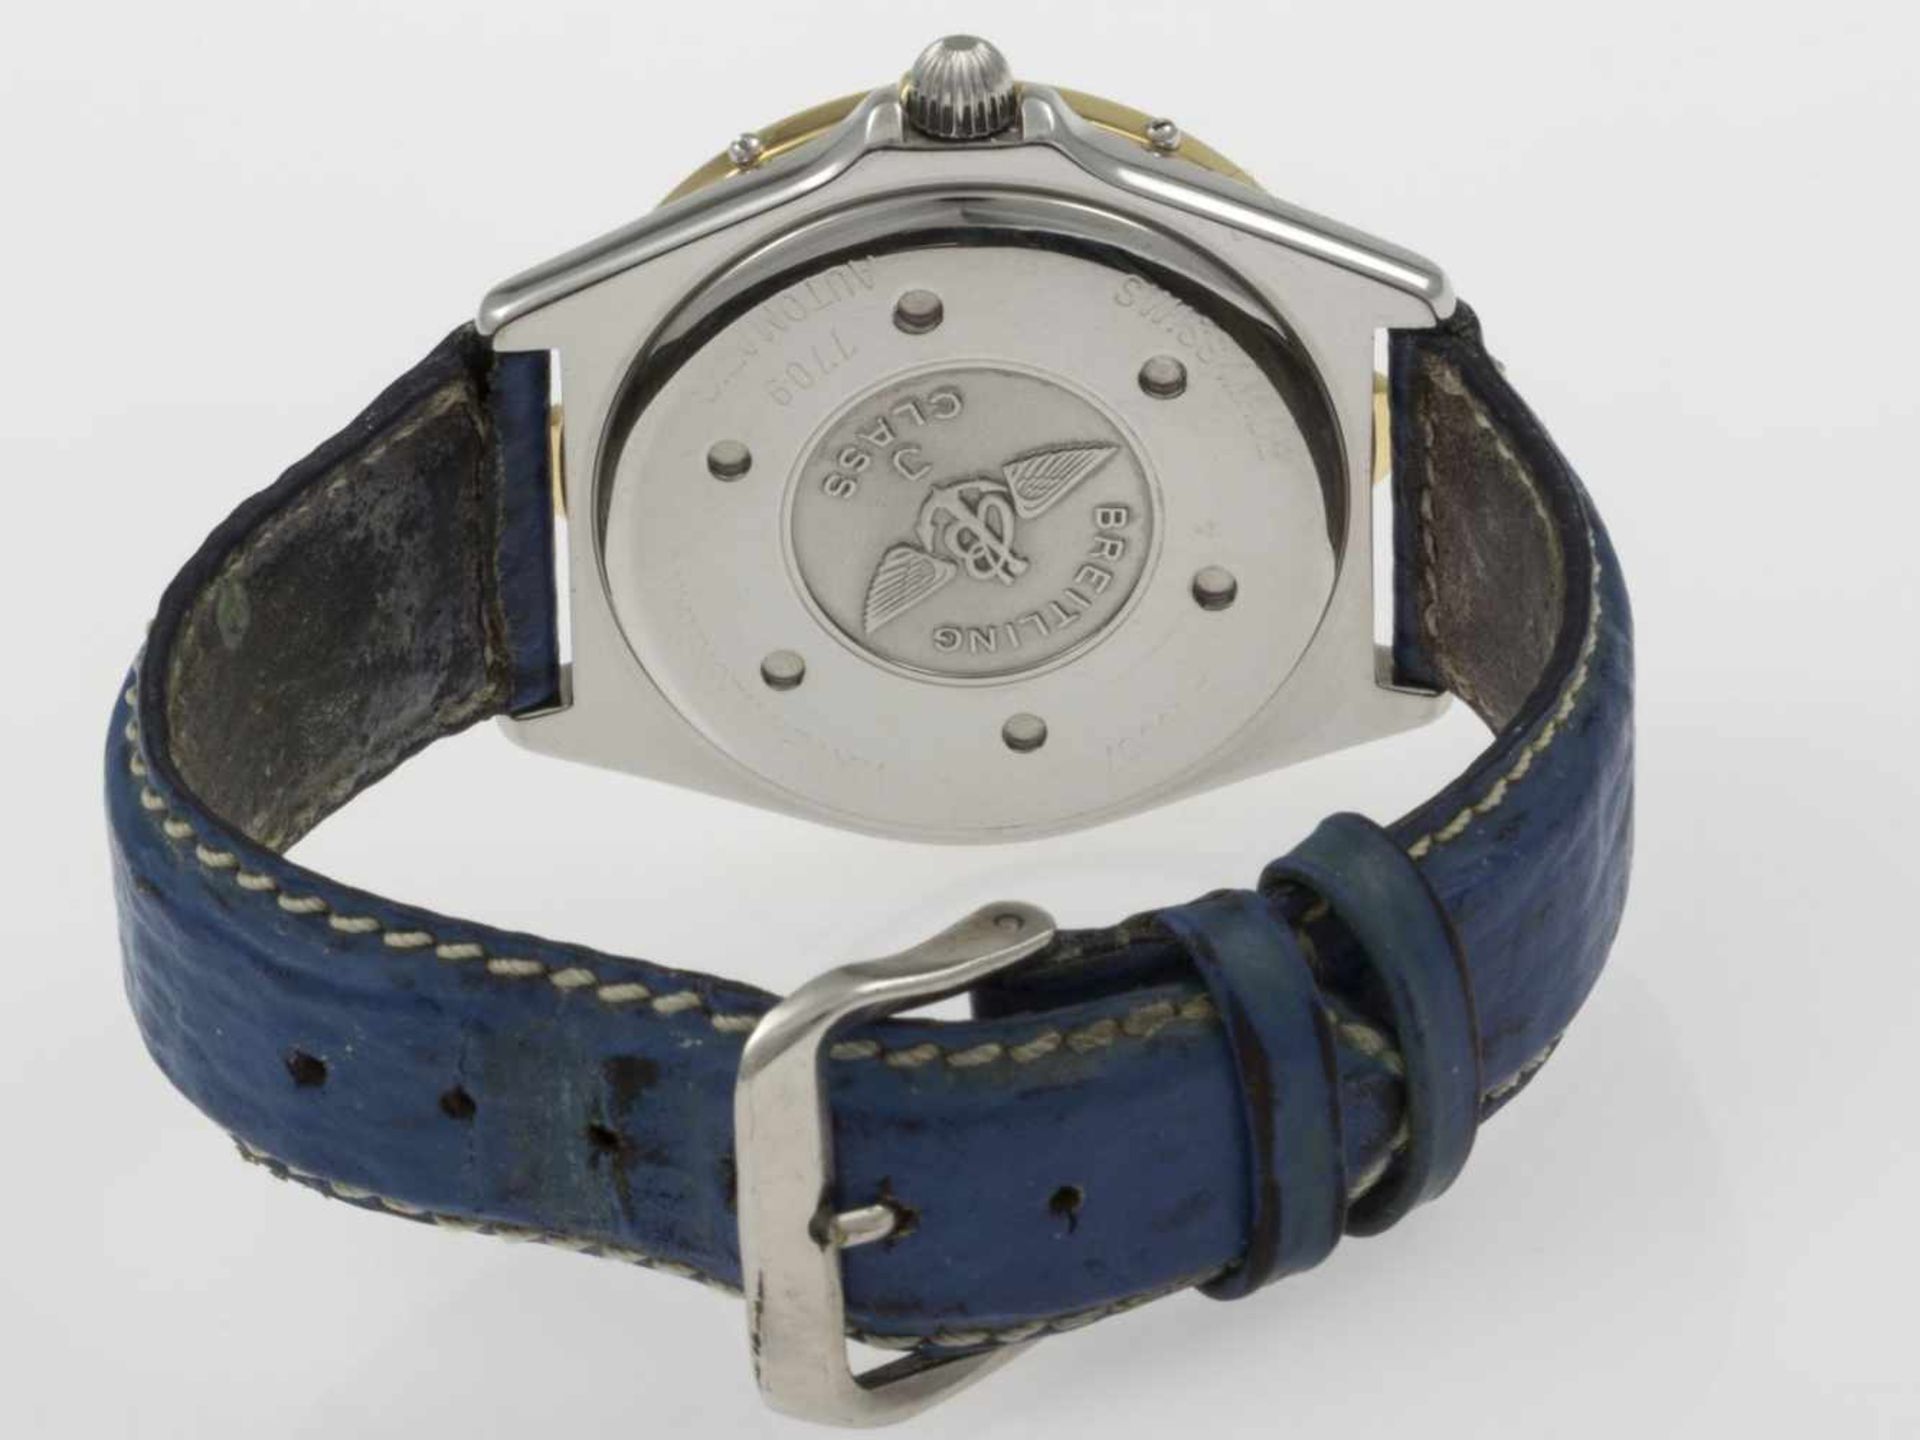 Breitling-Armbanduhr J ClassStahlgehäuse. Einseitig drehbare Lünette aus Gelbgold mit Segmenten - Bild 4 aus 4